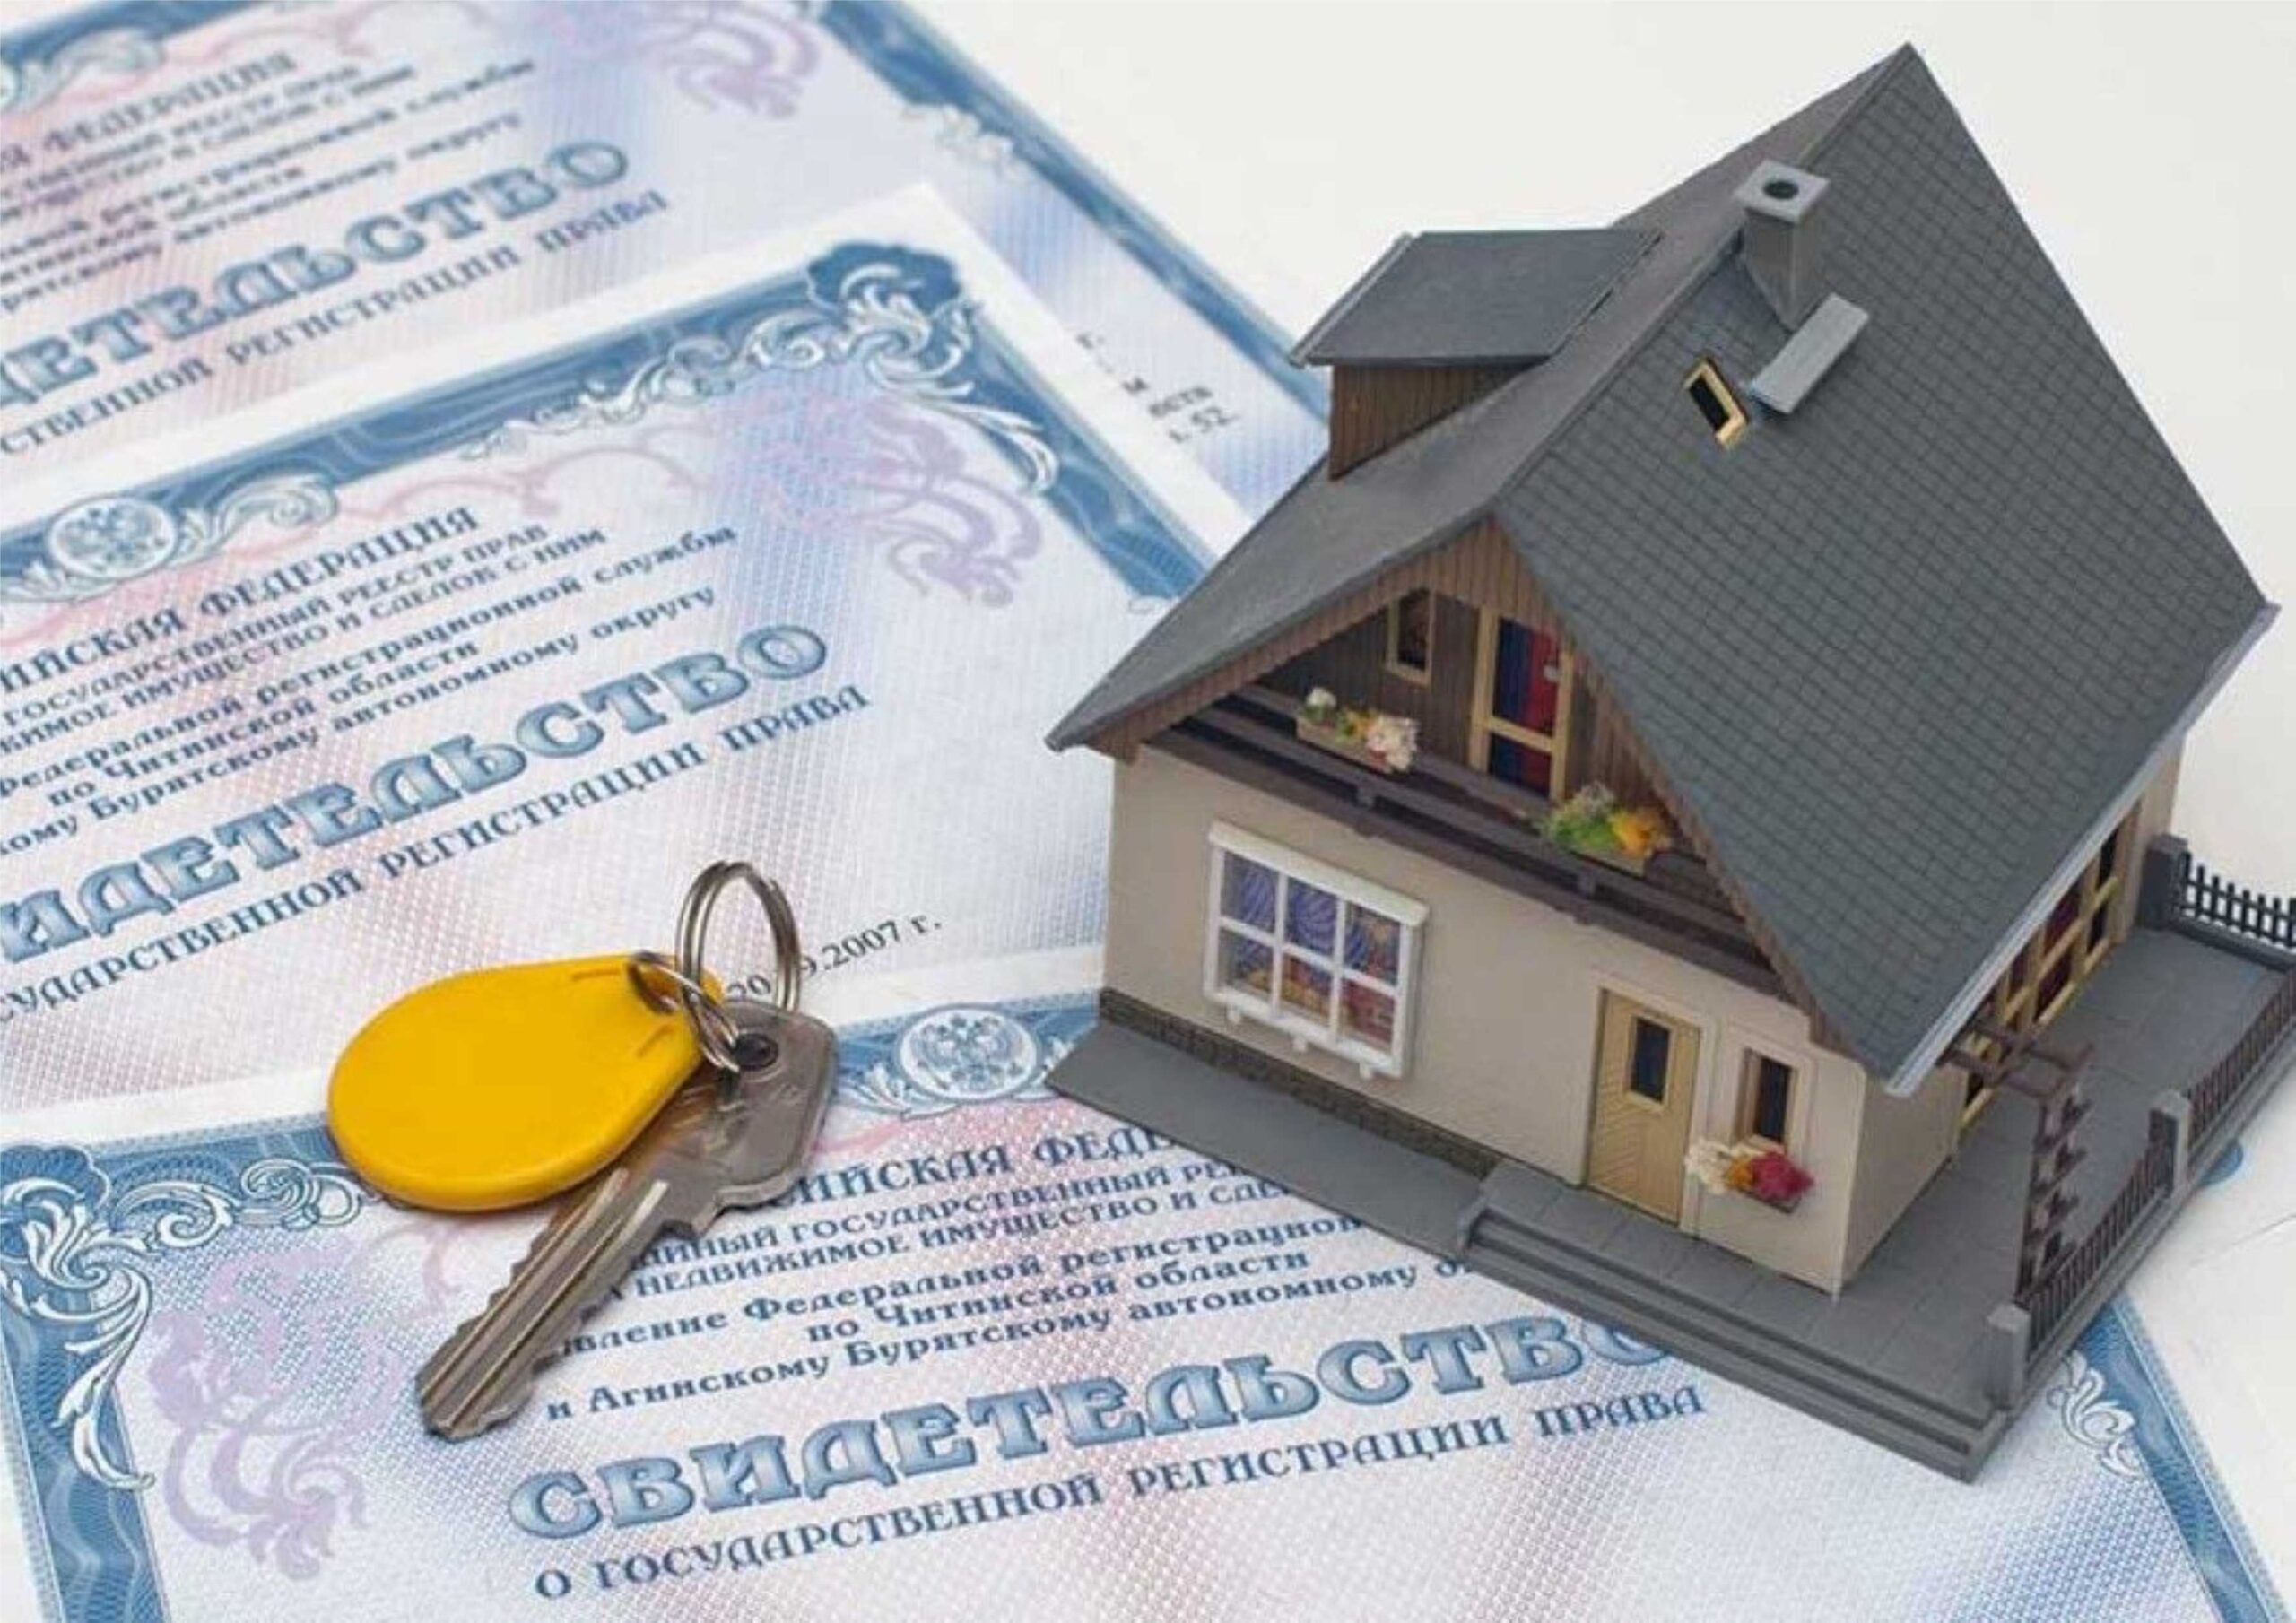 Права на объекты недвижимости необходимо регистрировать.